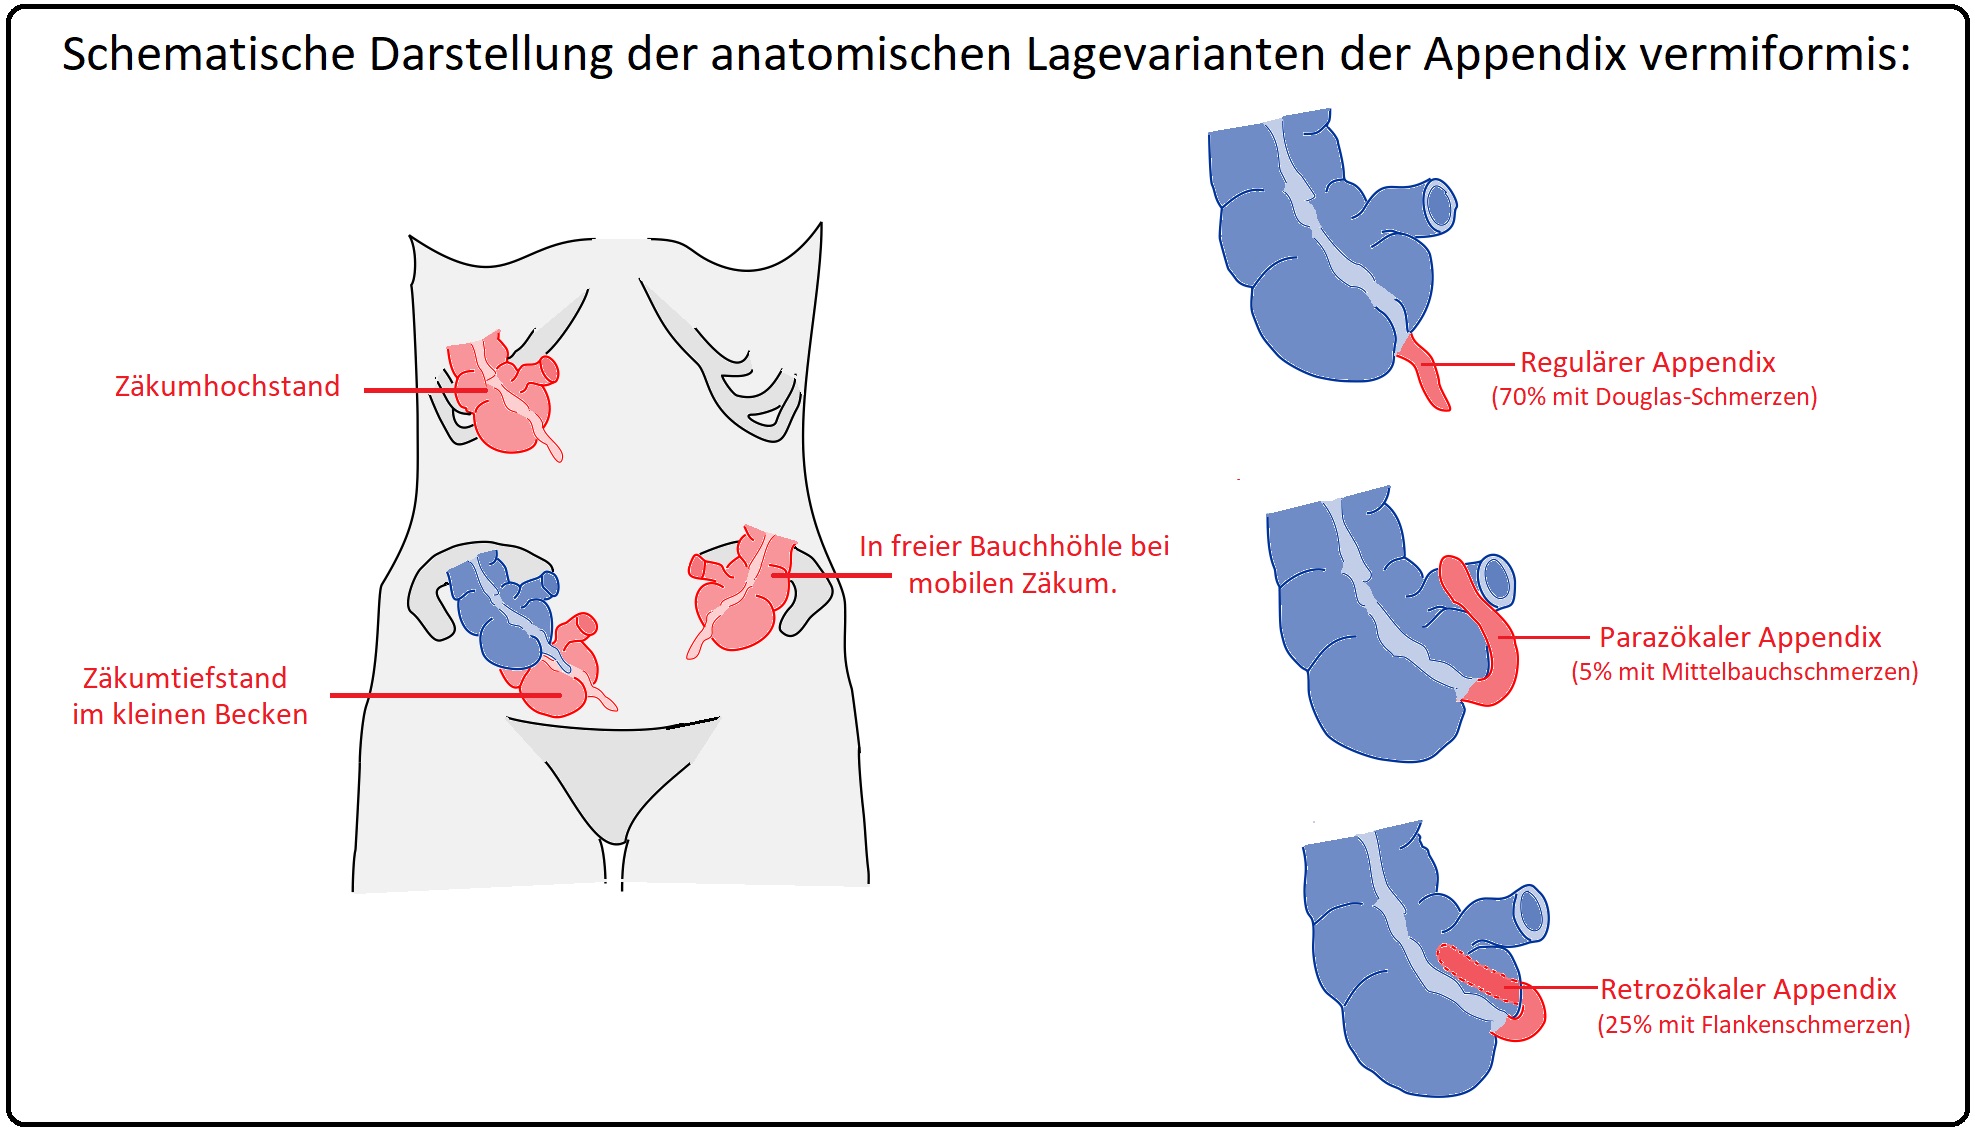 755 Schematische Darstellung der anatomischen Lagevarianten der Appendix vermiformis